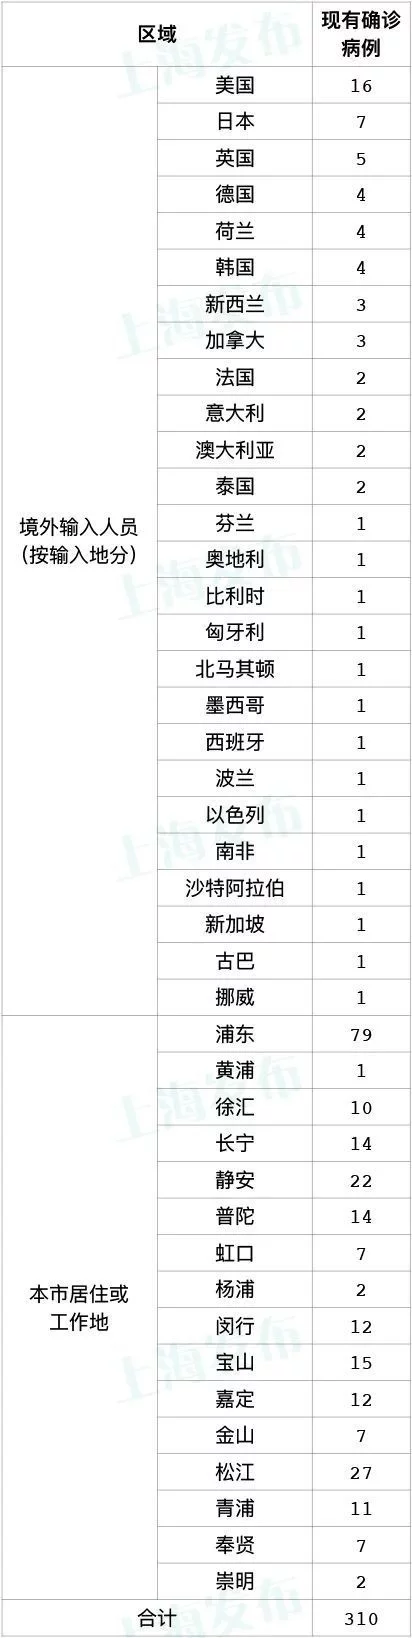 上海新增本土确诊病例11例 新增本土无症状感染者120例